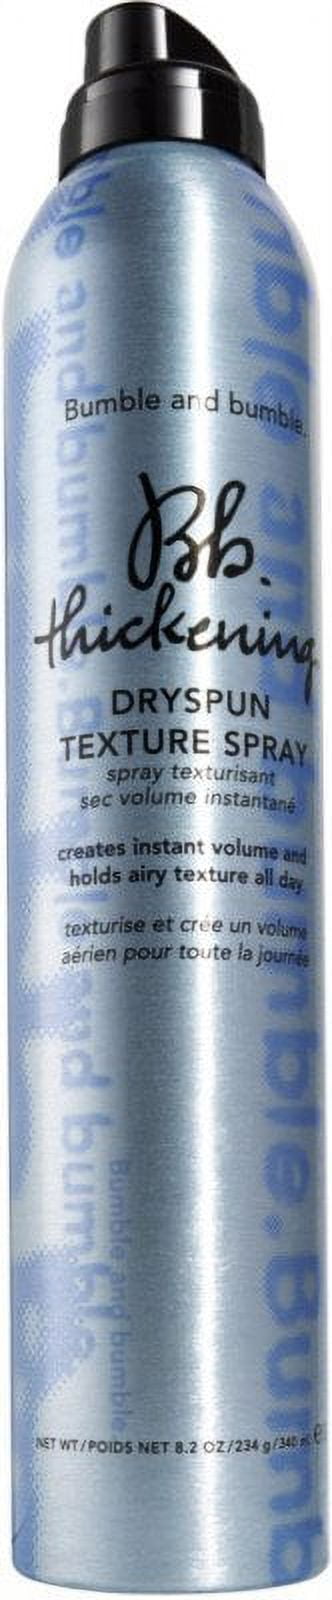 Thickening Dryspun Texture Spray 